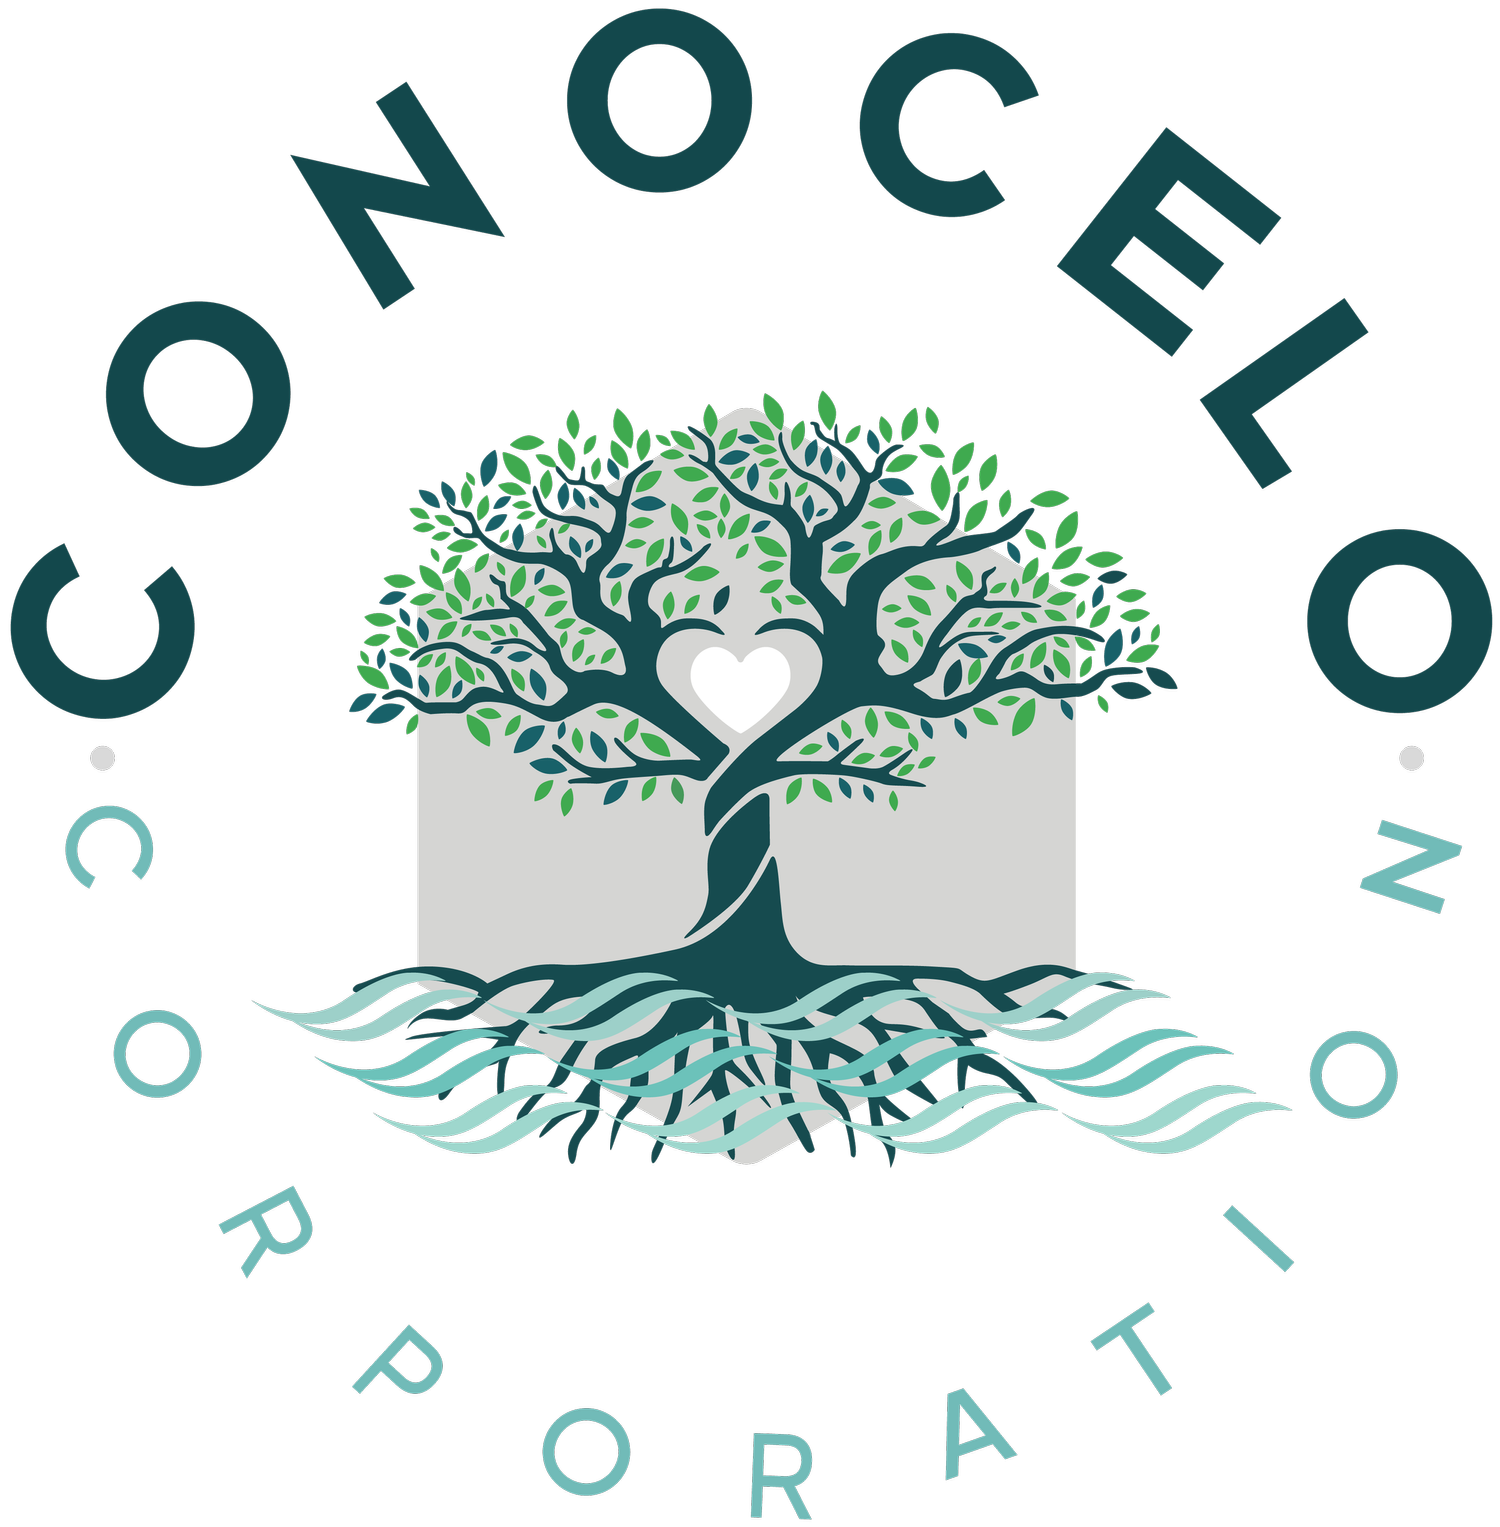 Conocelo Corporation